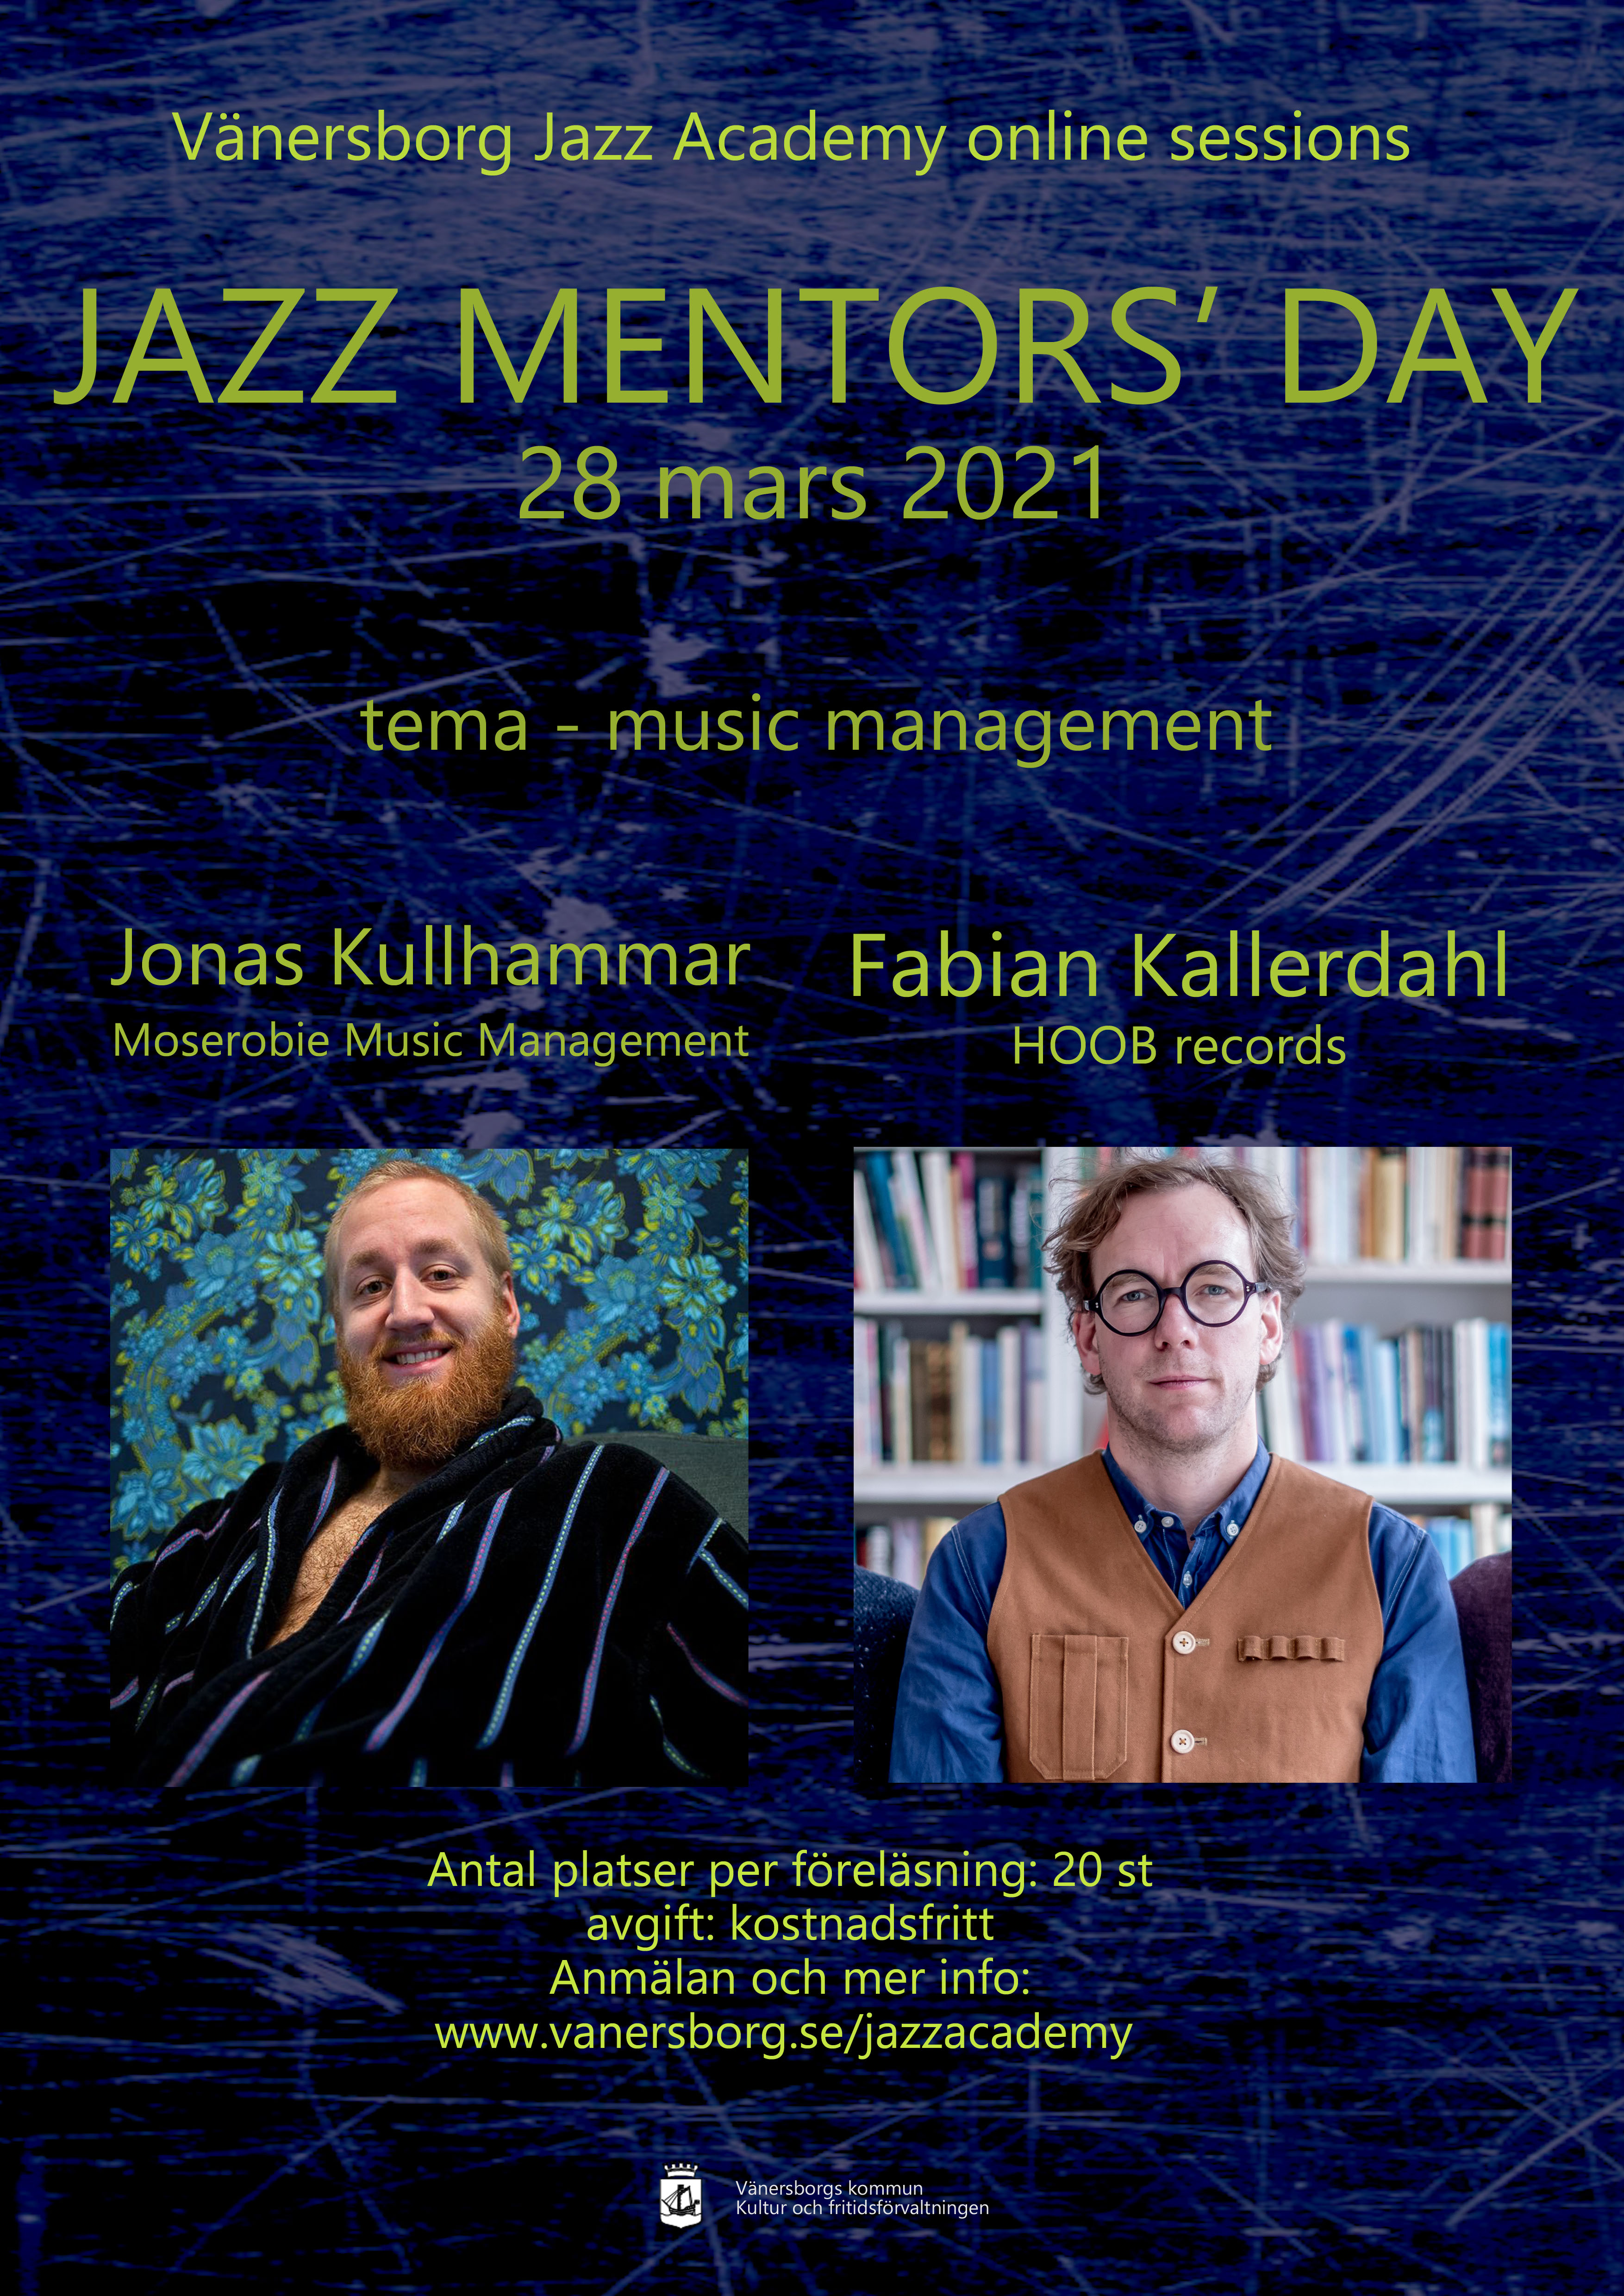 gästerna Jonas Kullhammar och Fabian Kallerdahl på Jazz mentor's day 2021